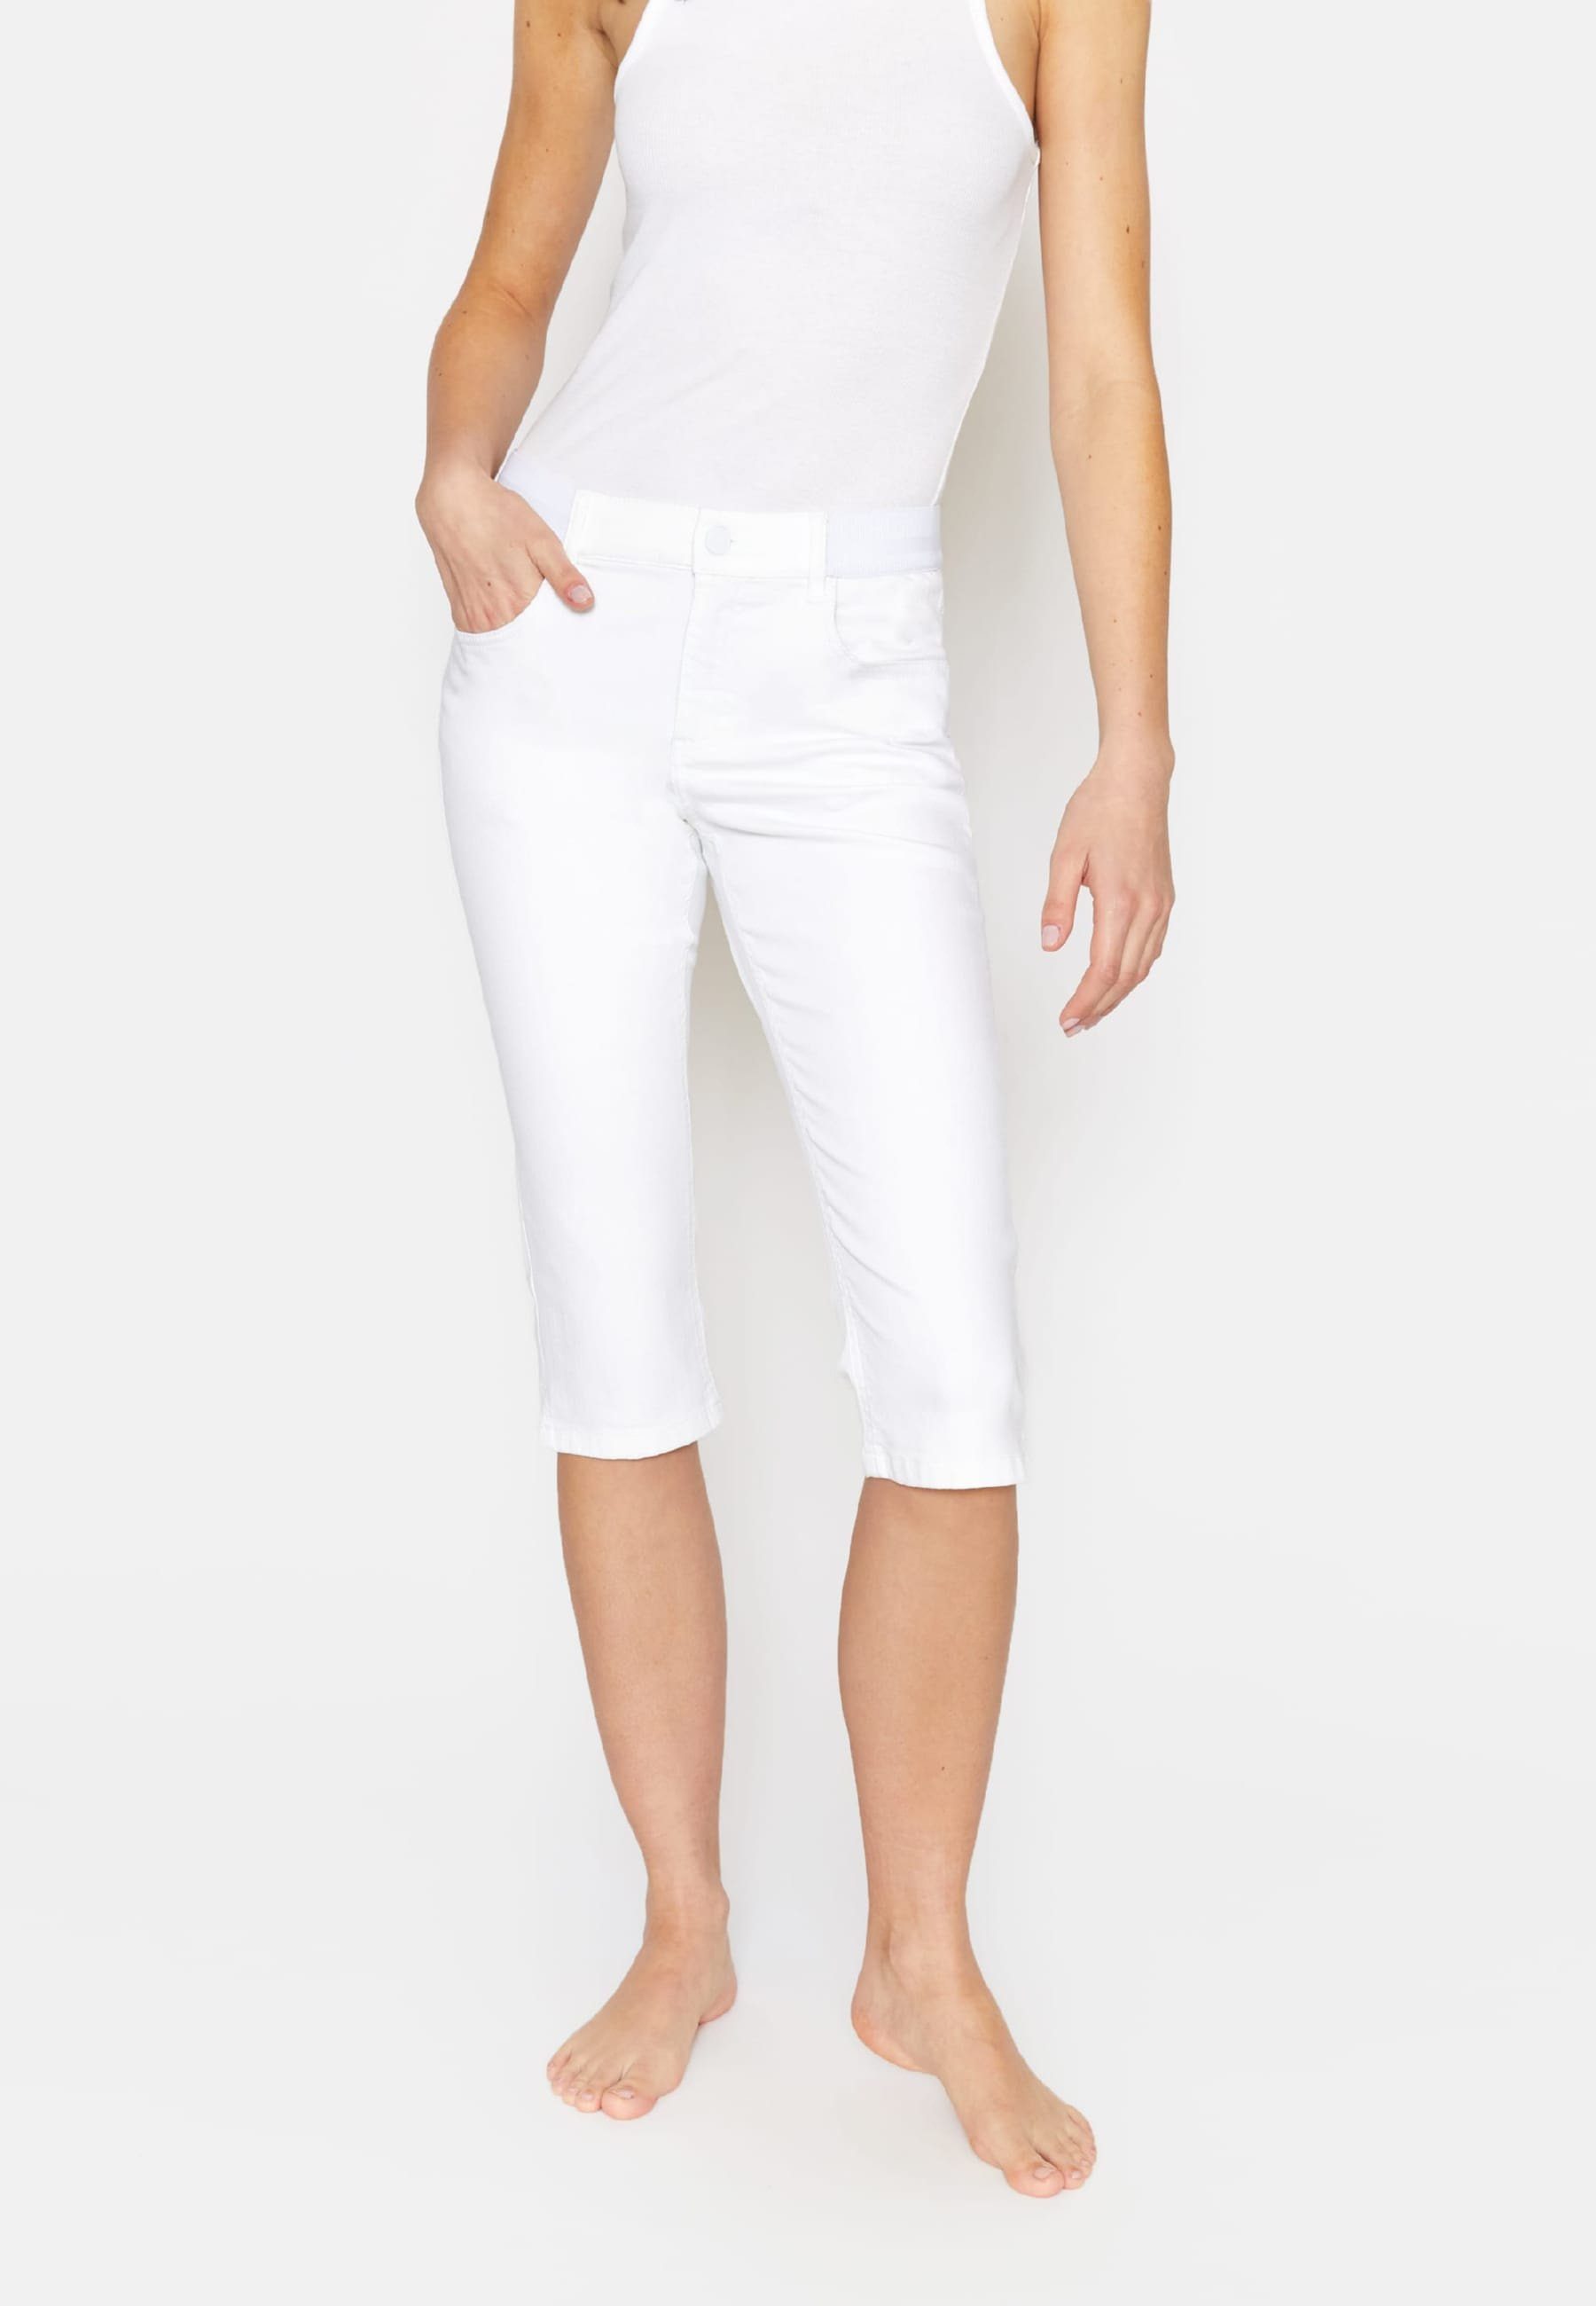 Kurze Design Jeans mit weiß Capri ANGELS klassischem Dehnbund-Jeans Onesize